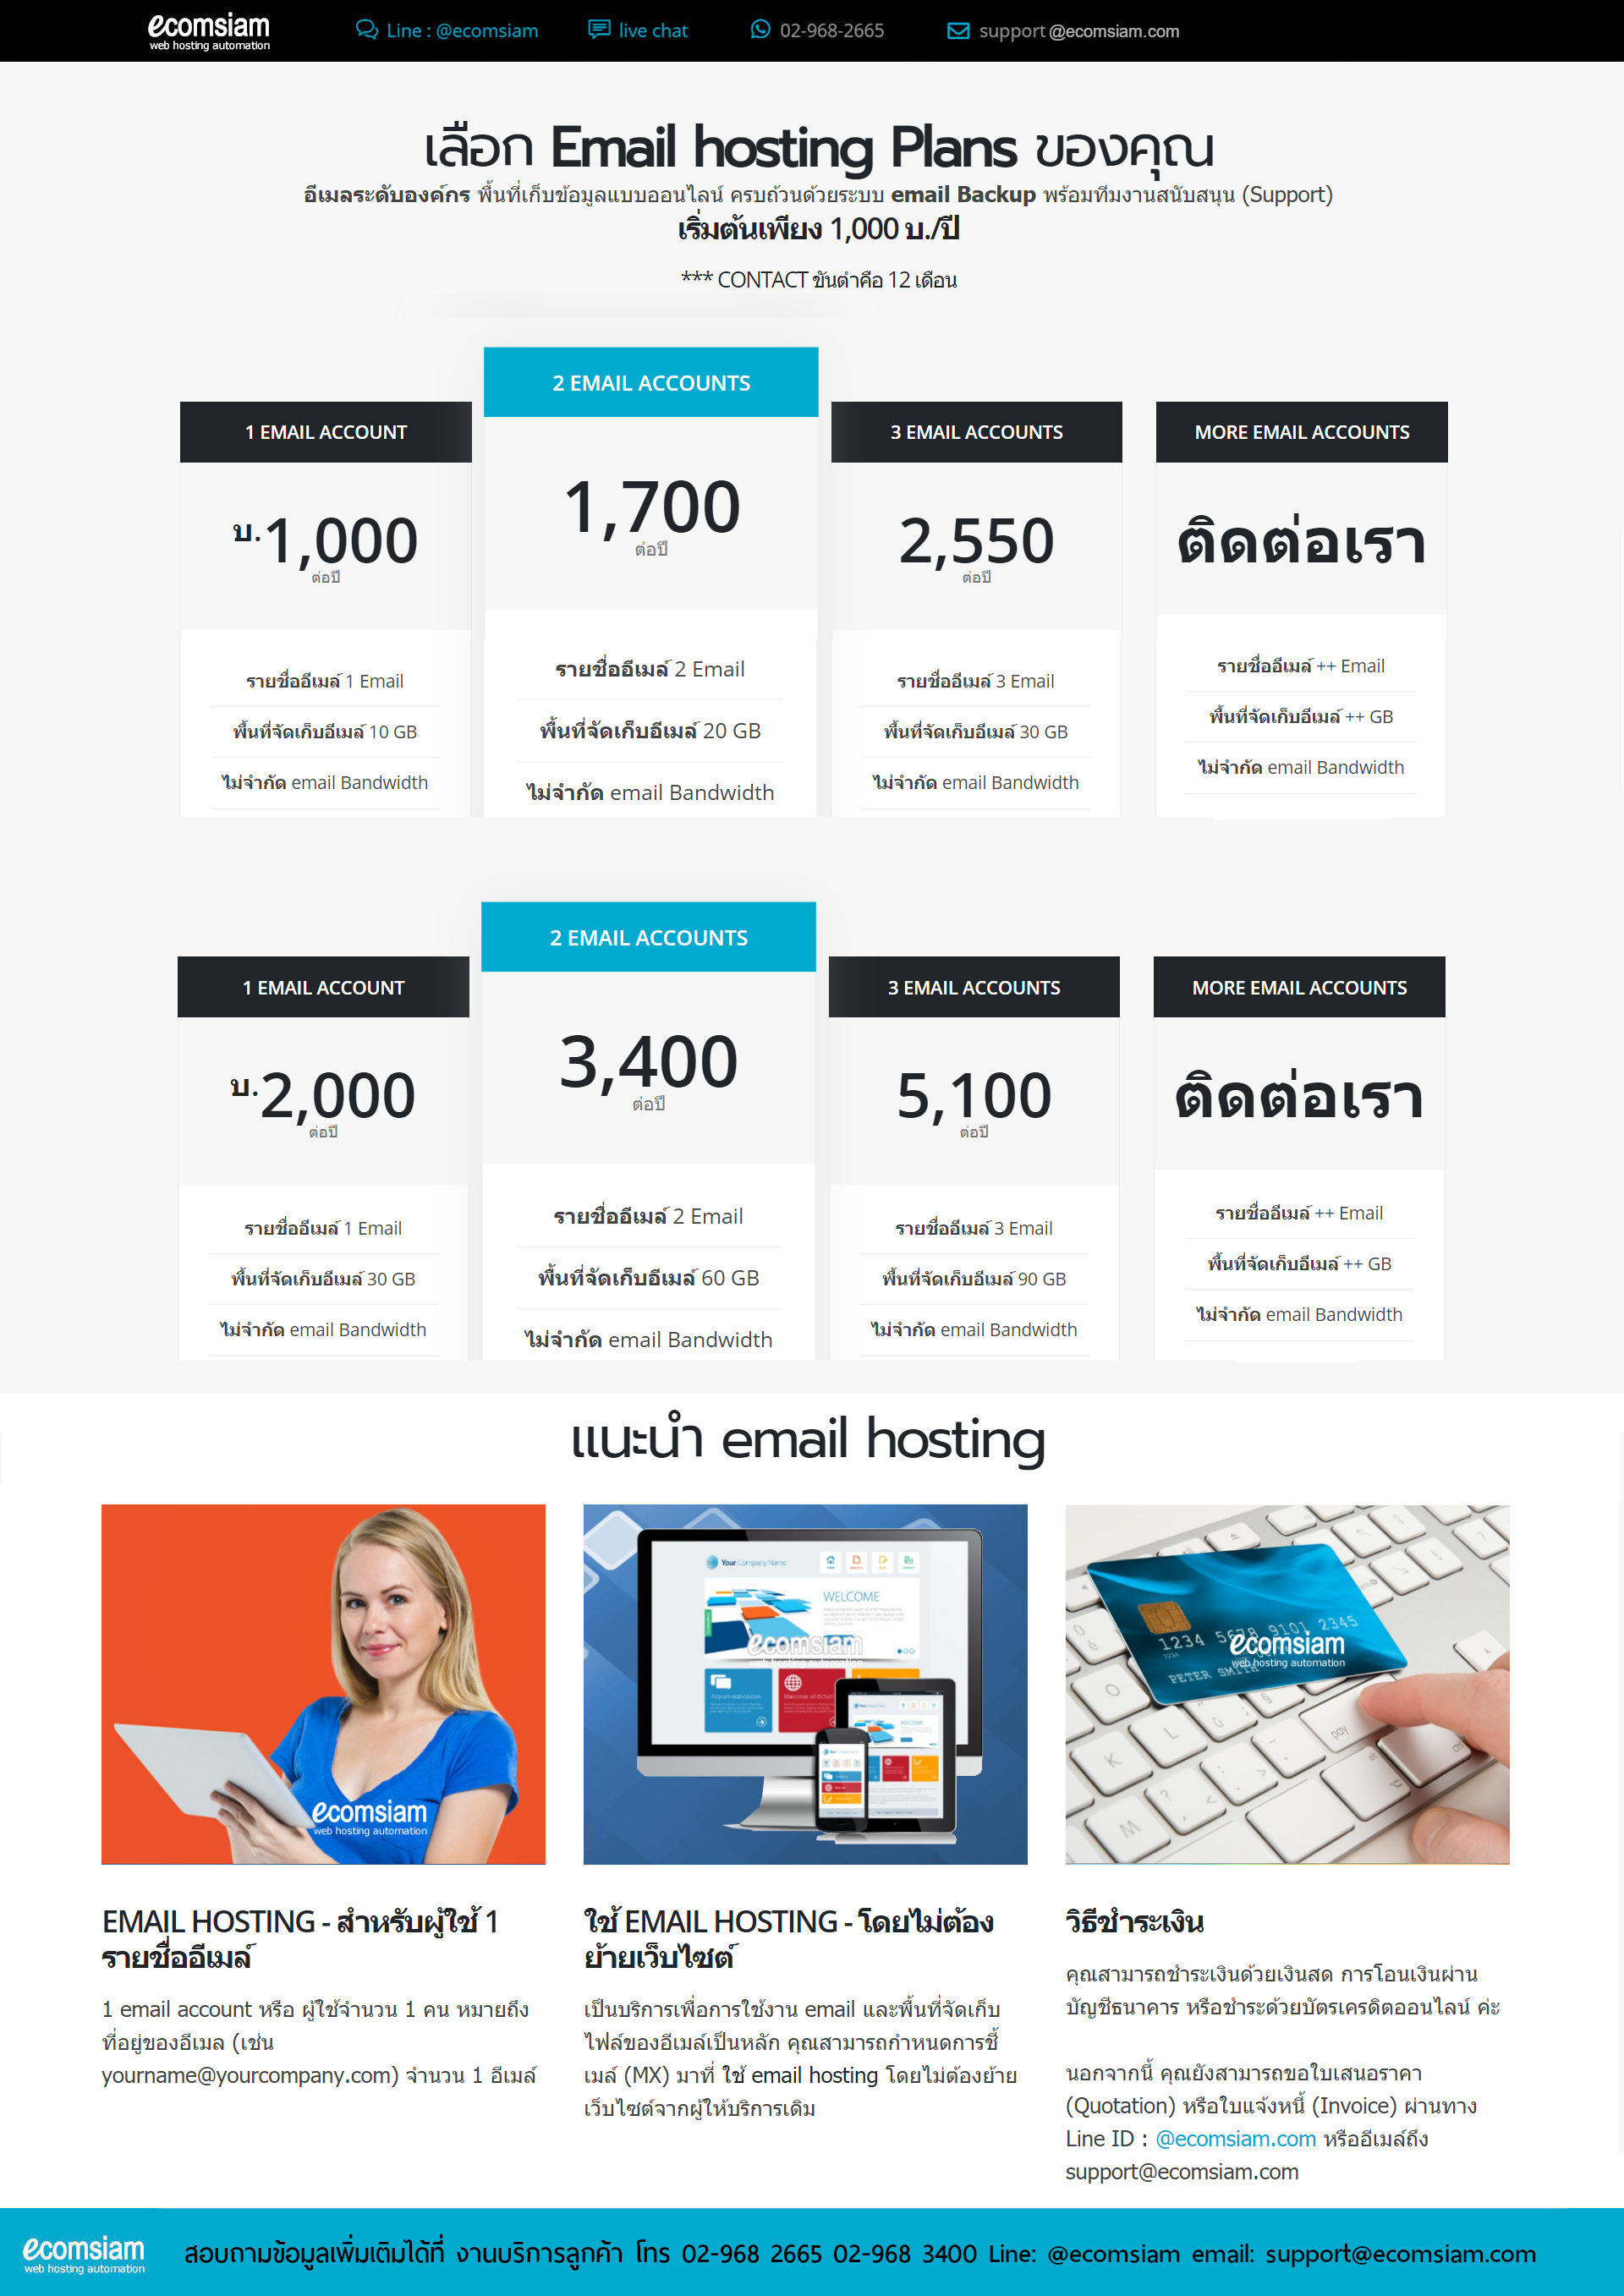 email-hosting-thai-brochure-p2.jpg?1619681560034